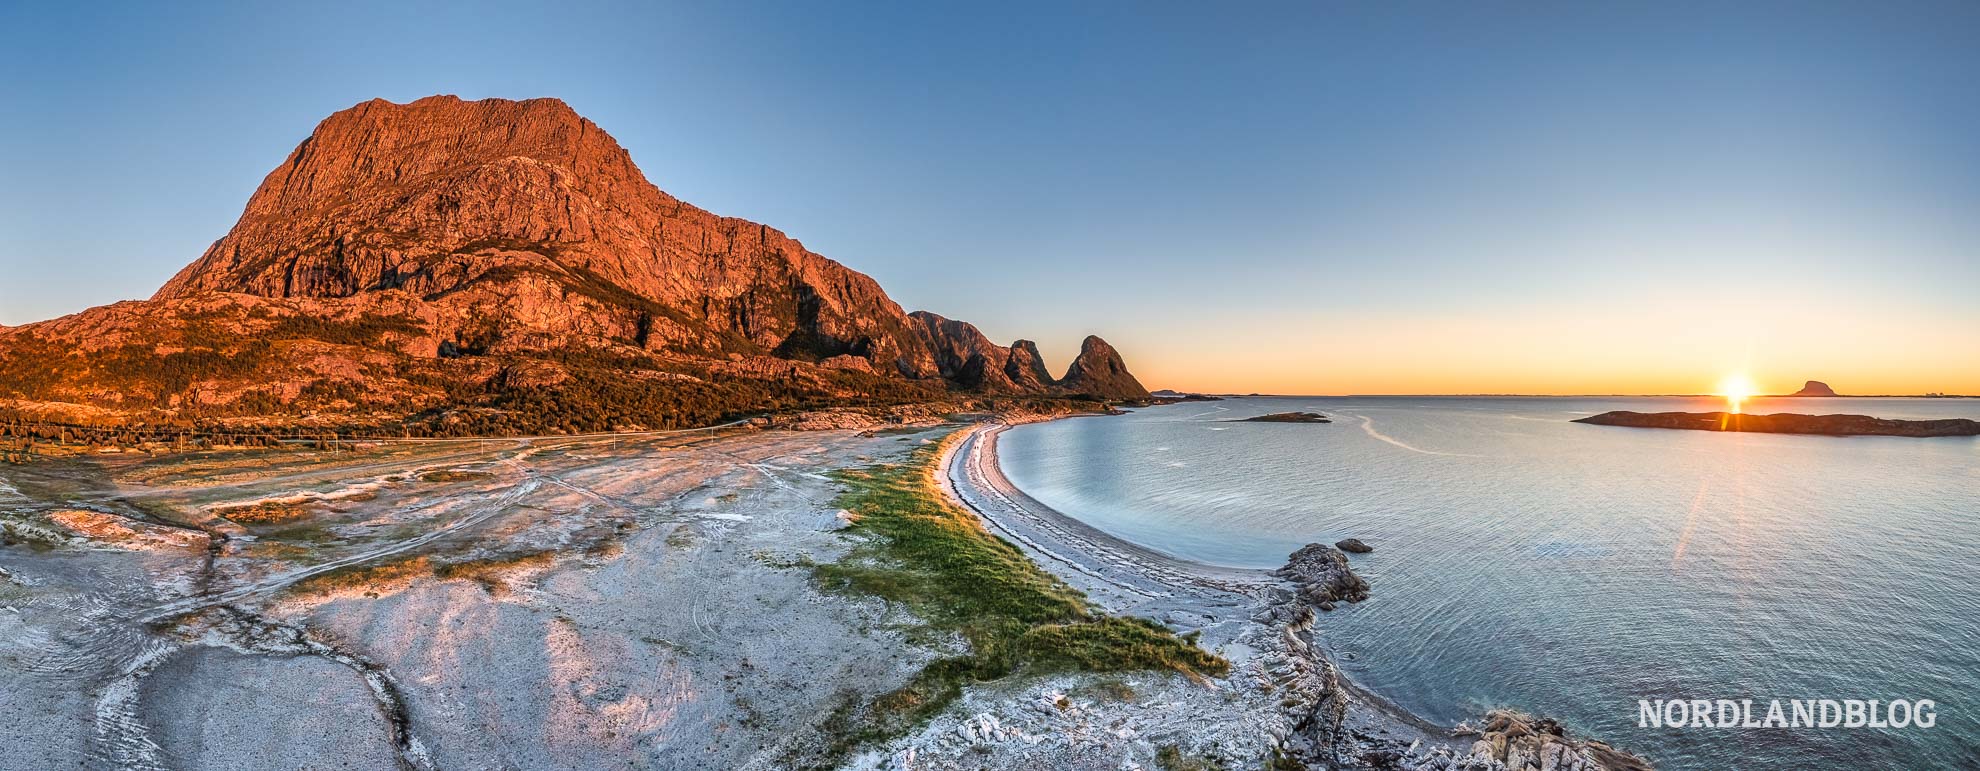 Panorama Insel Tomma Norwegen